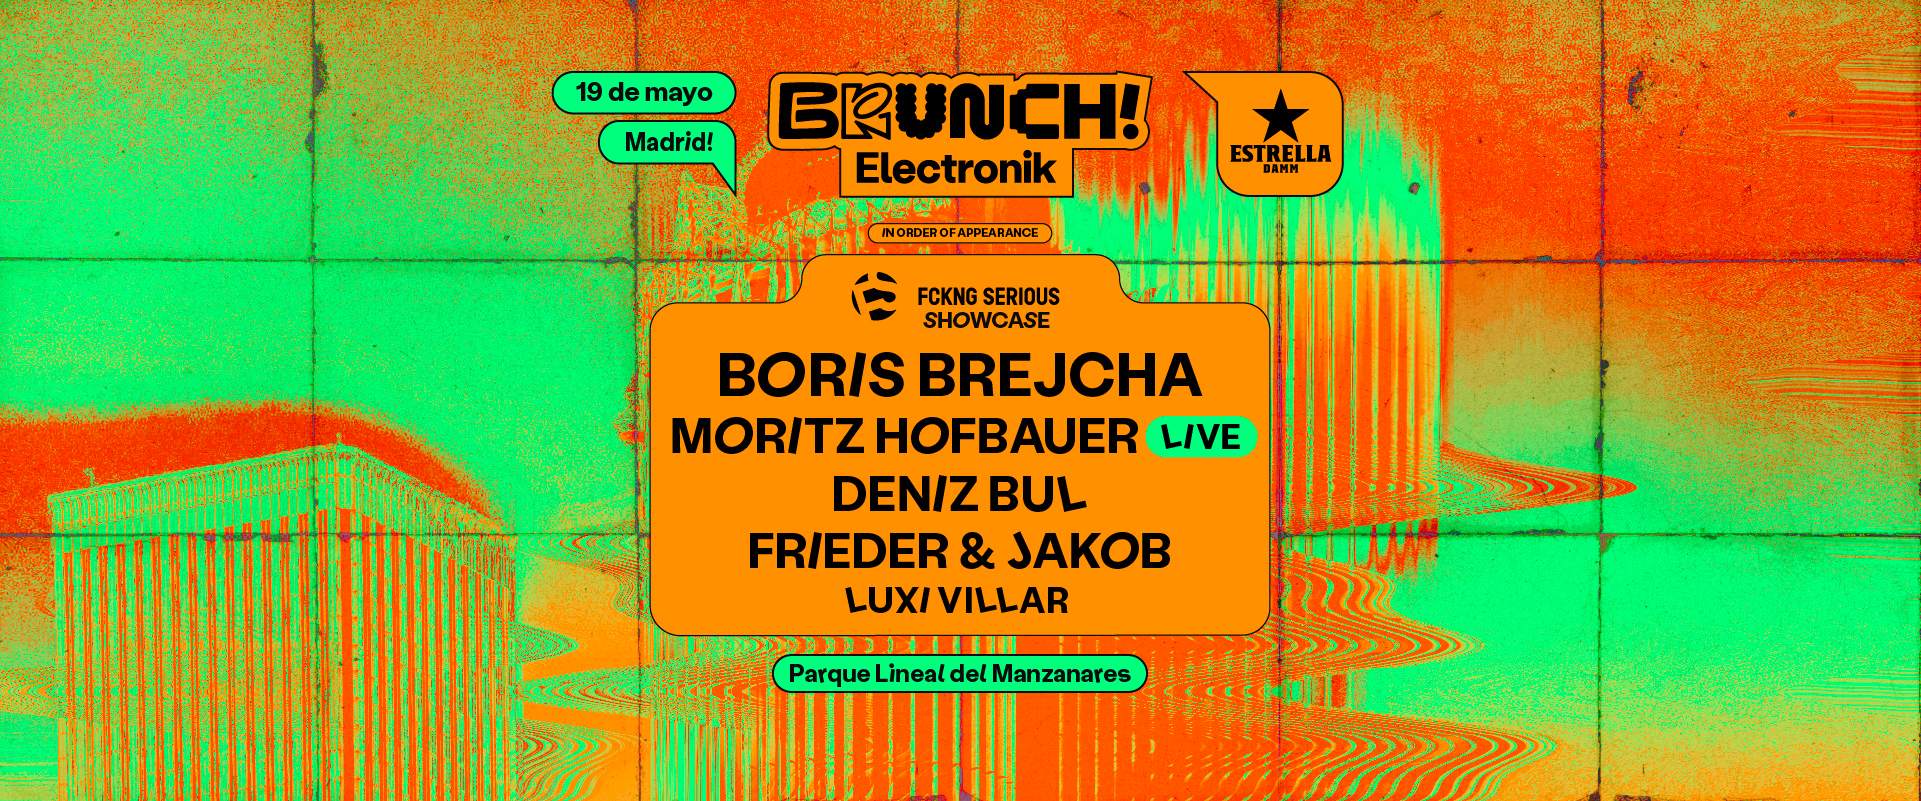 Brunch Electronik Madrid #4 Boris Brejcha, Moritz Hofbauer live, Deniz Bul y más - Página trasera